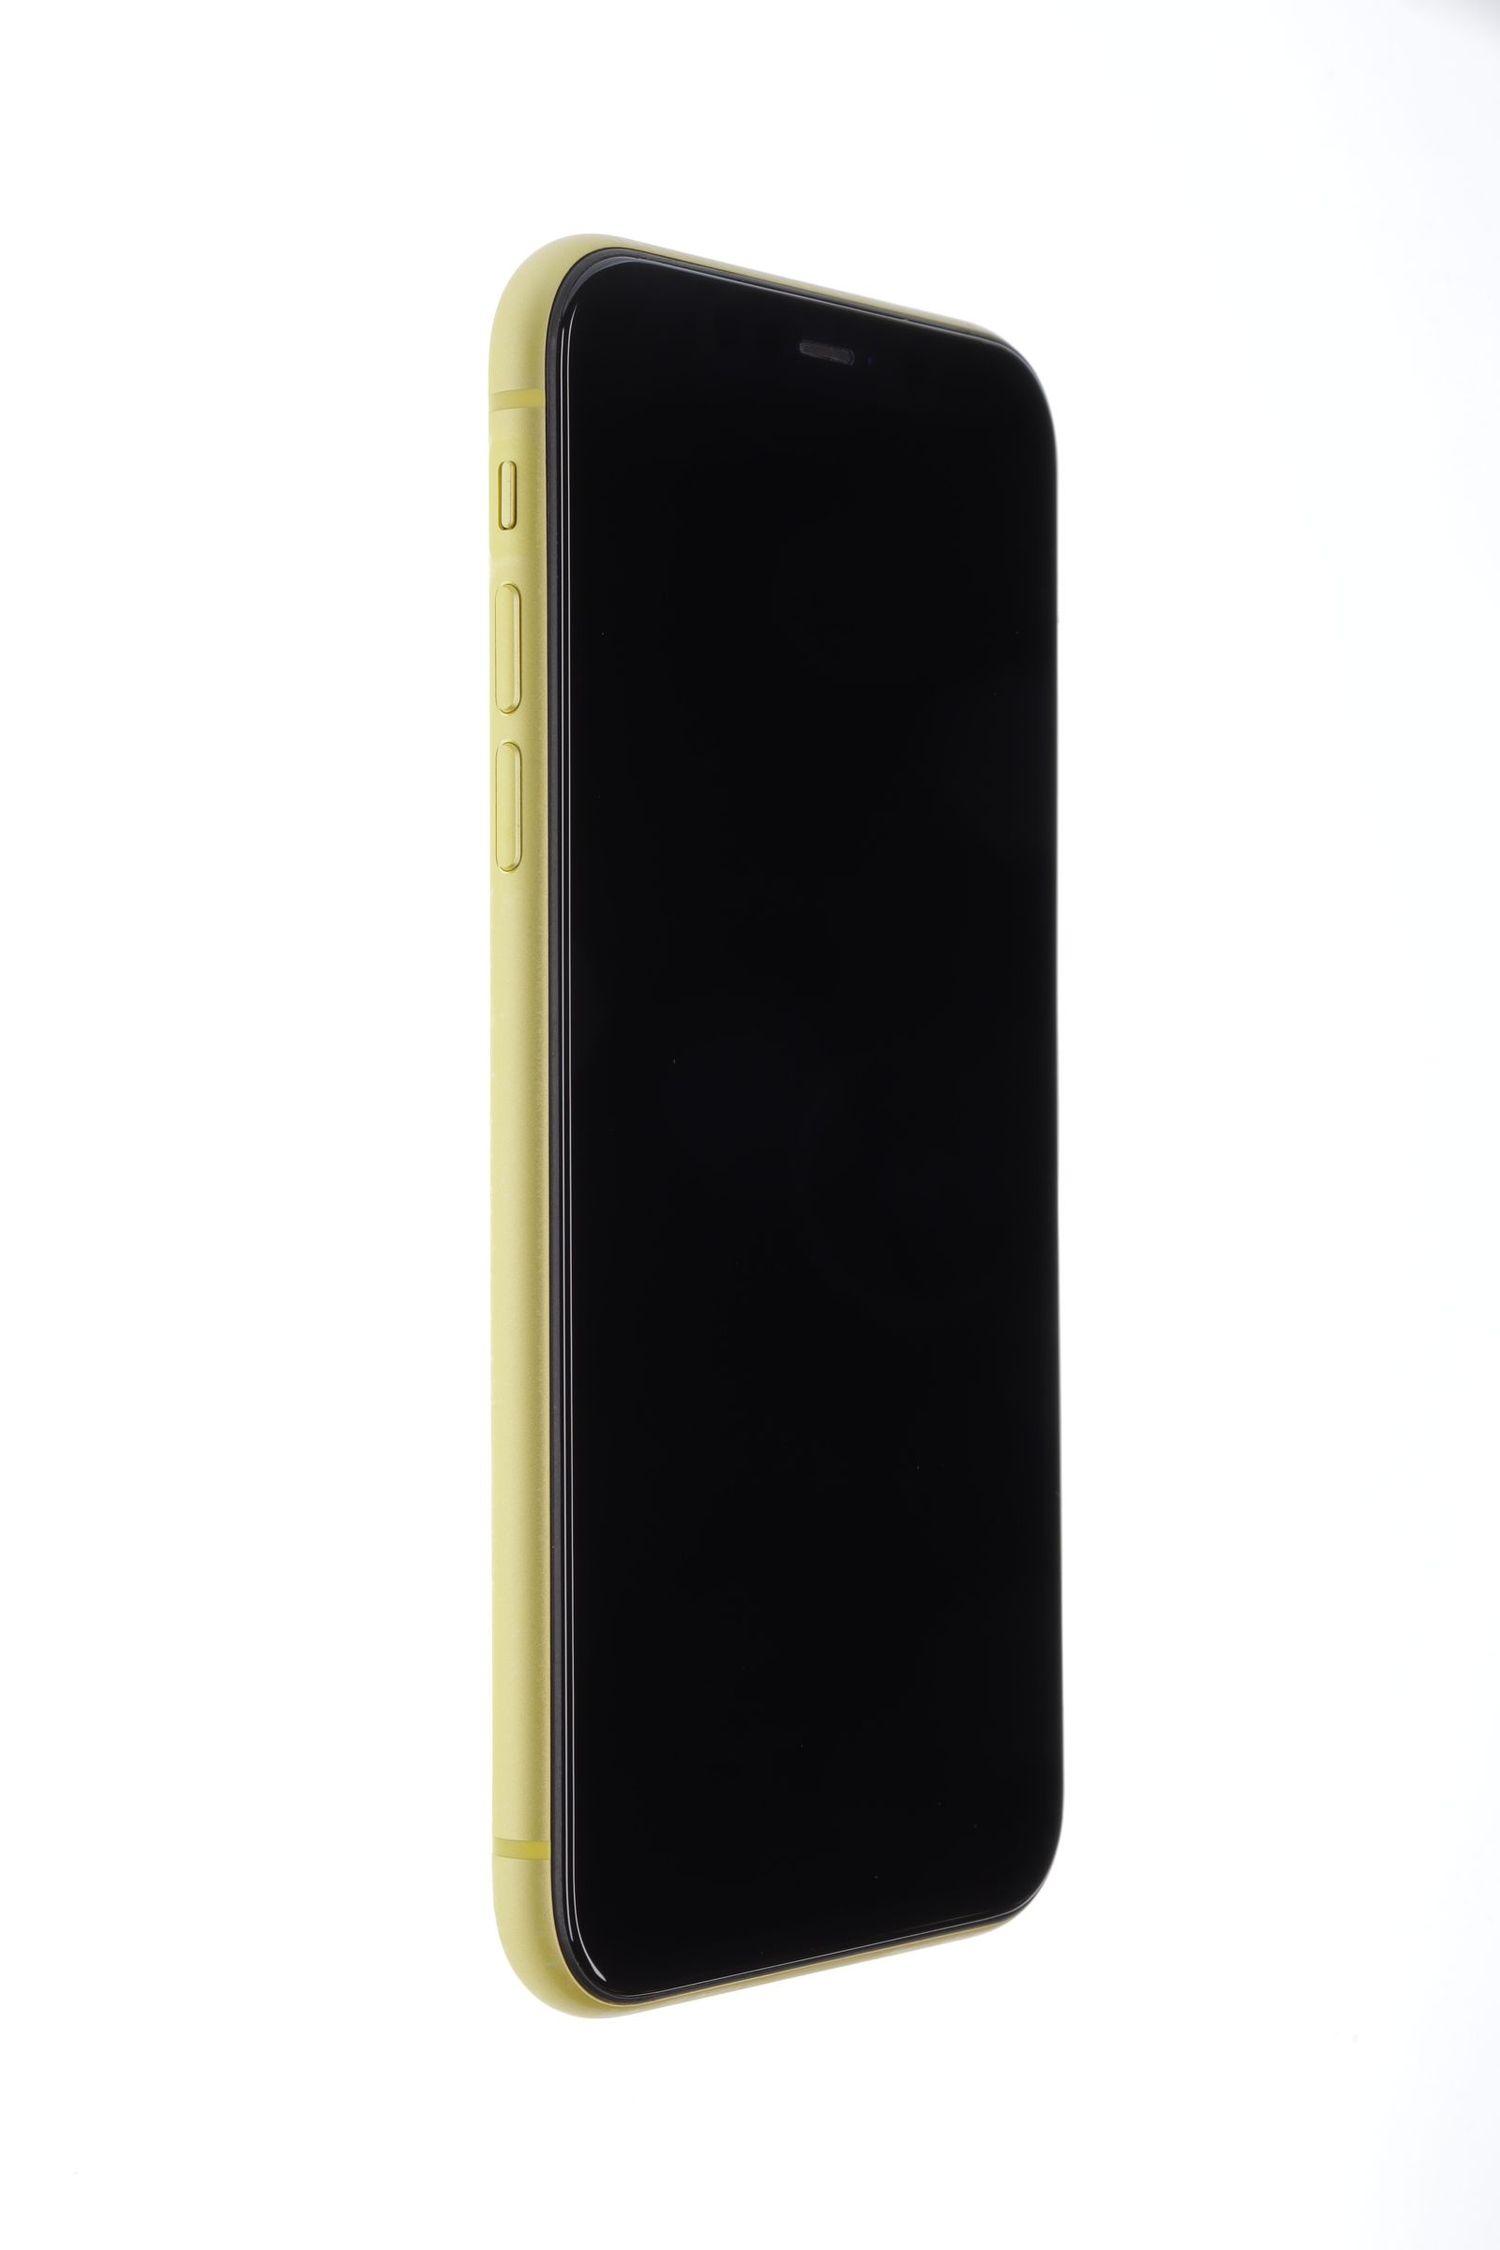 Κινητό τηλέφωνο Apple iPhone 11, Yellow, 64 GB, Excelent